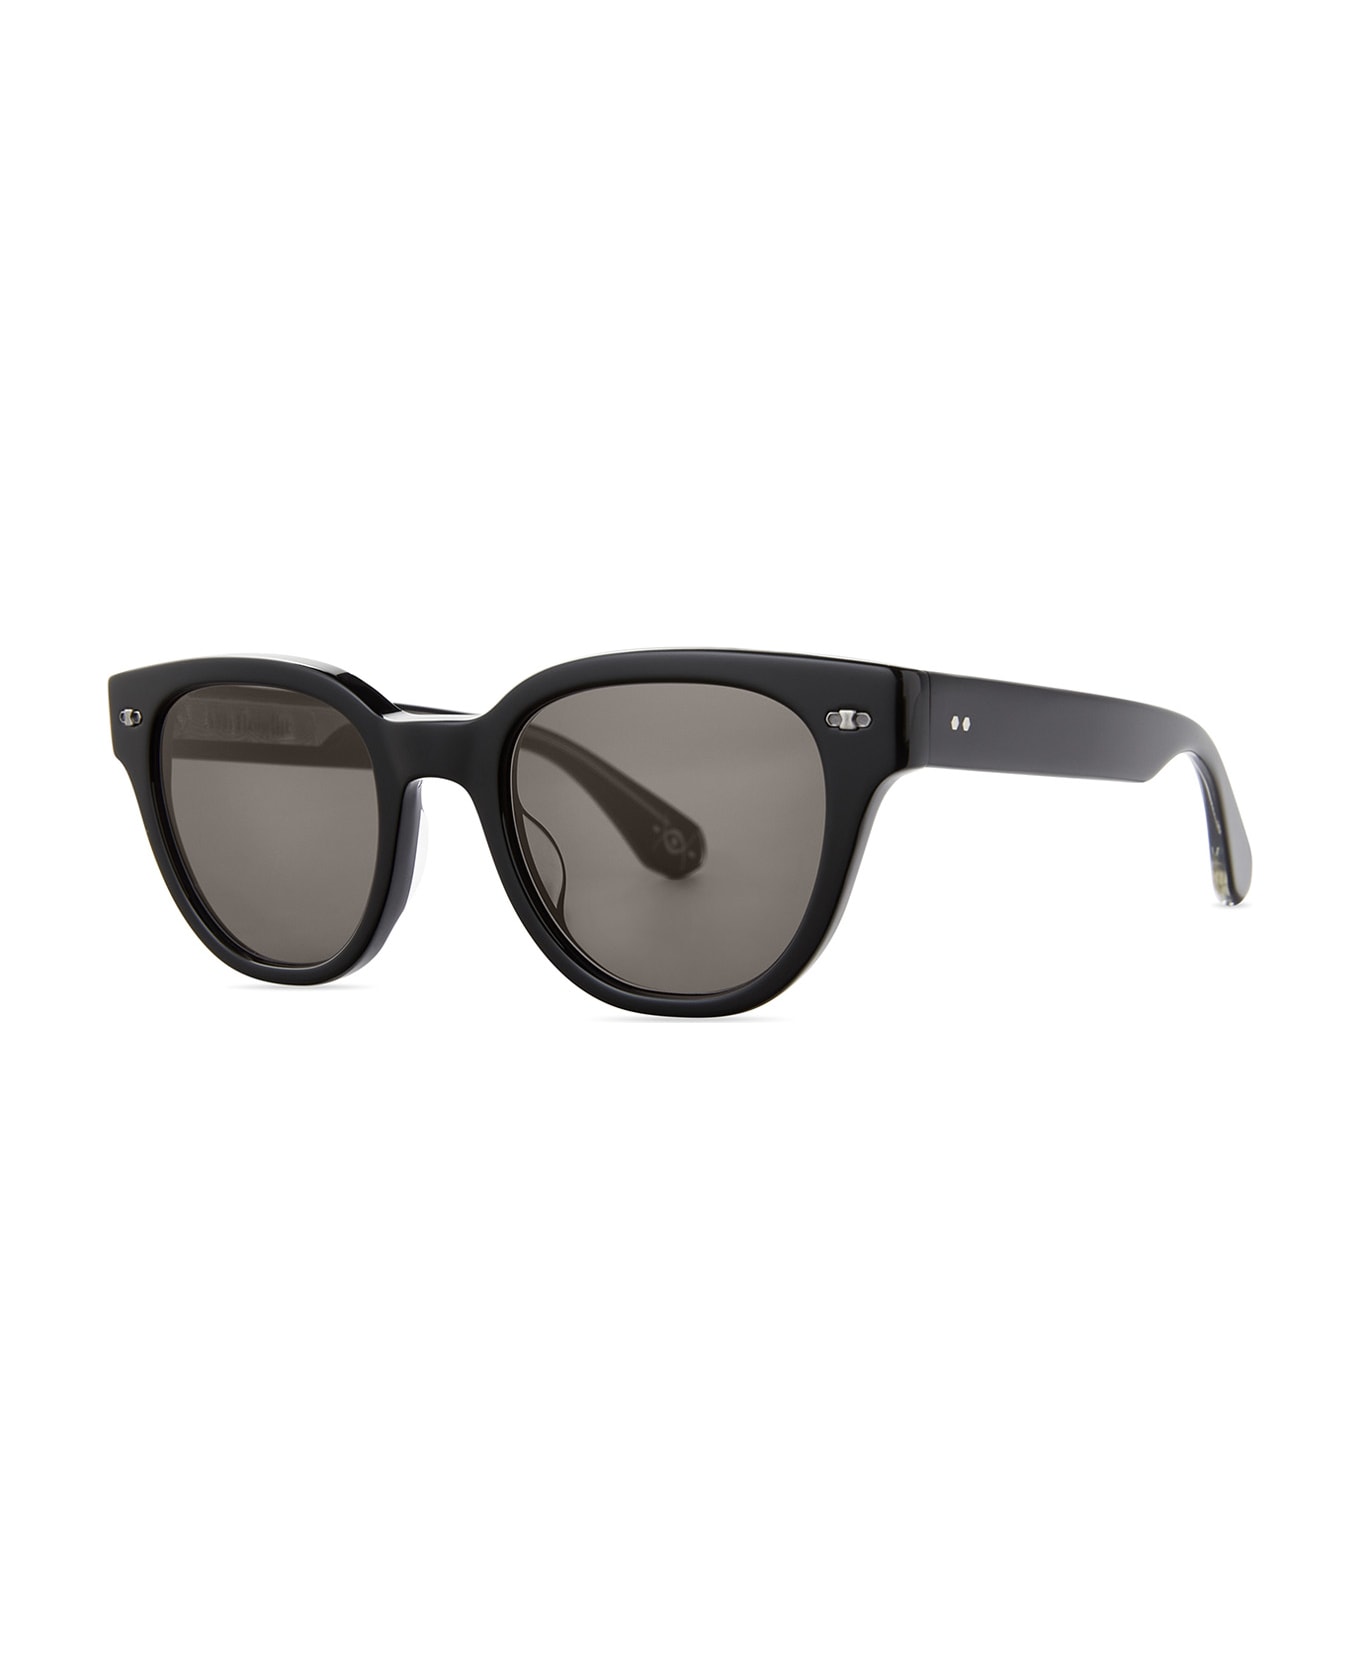 Mr. Leight Jane S Black-pewter/lava Sunglasses - Black-Pewter/Lava サングラス